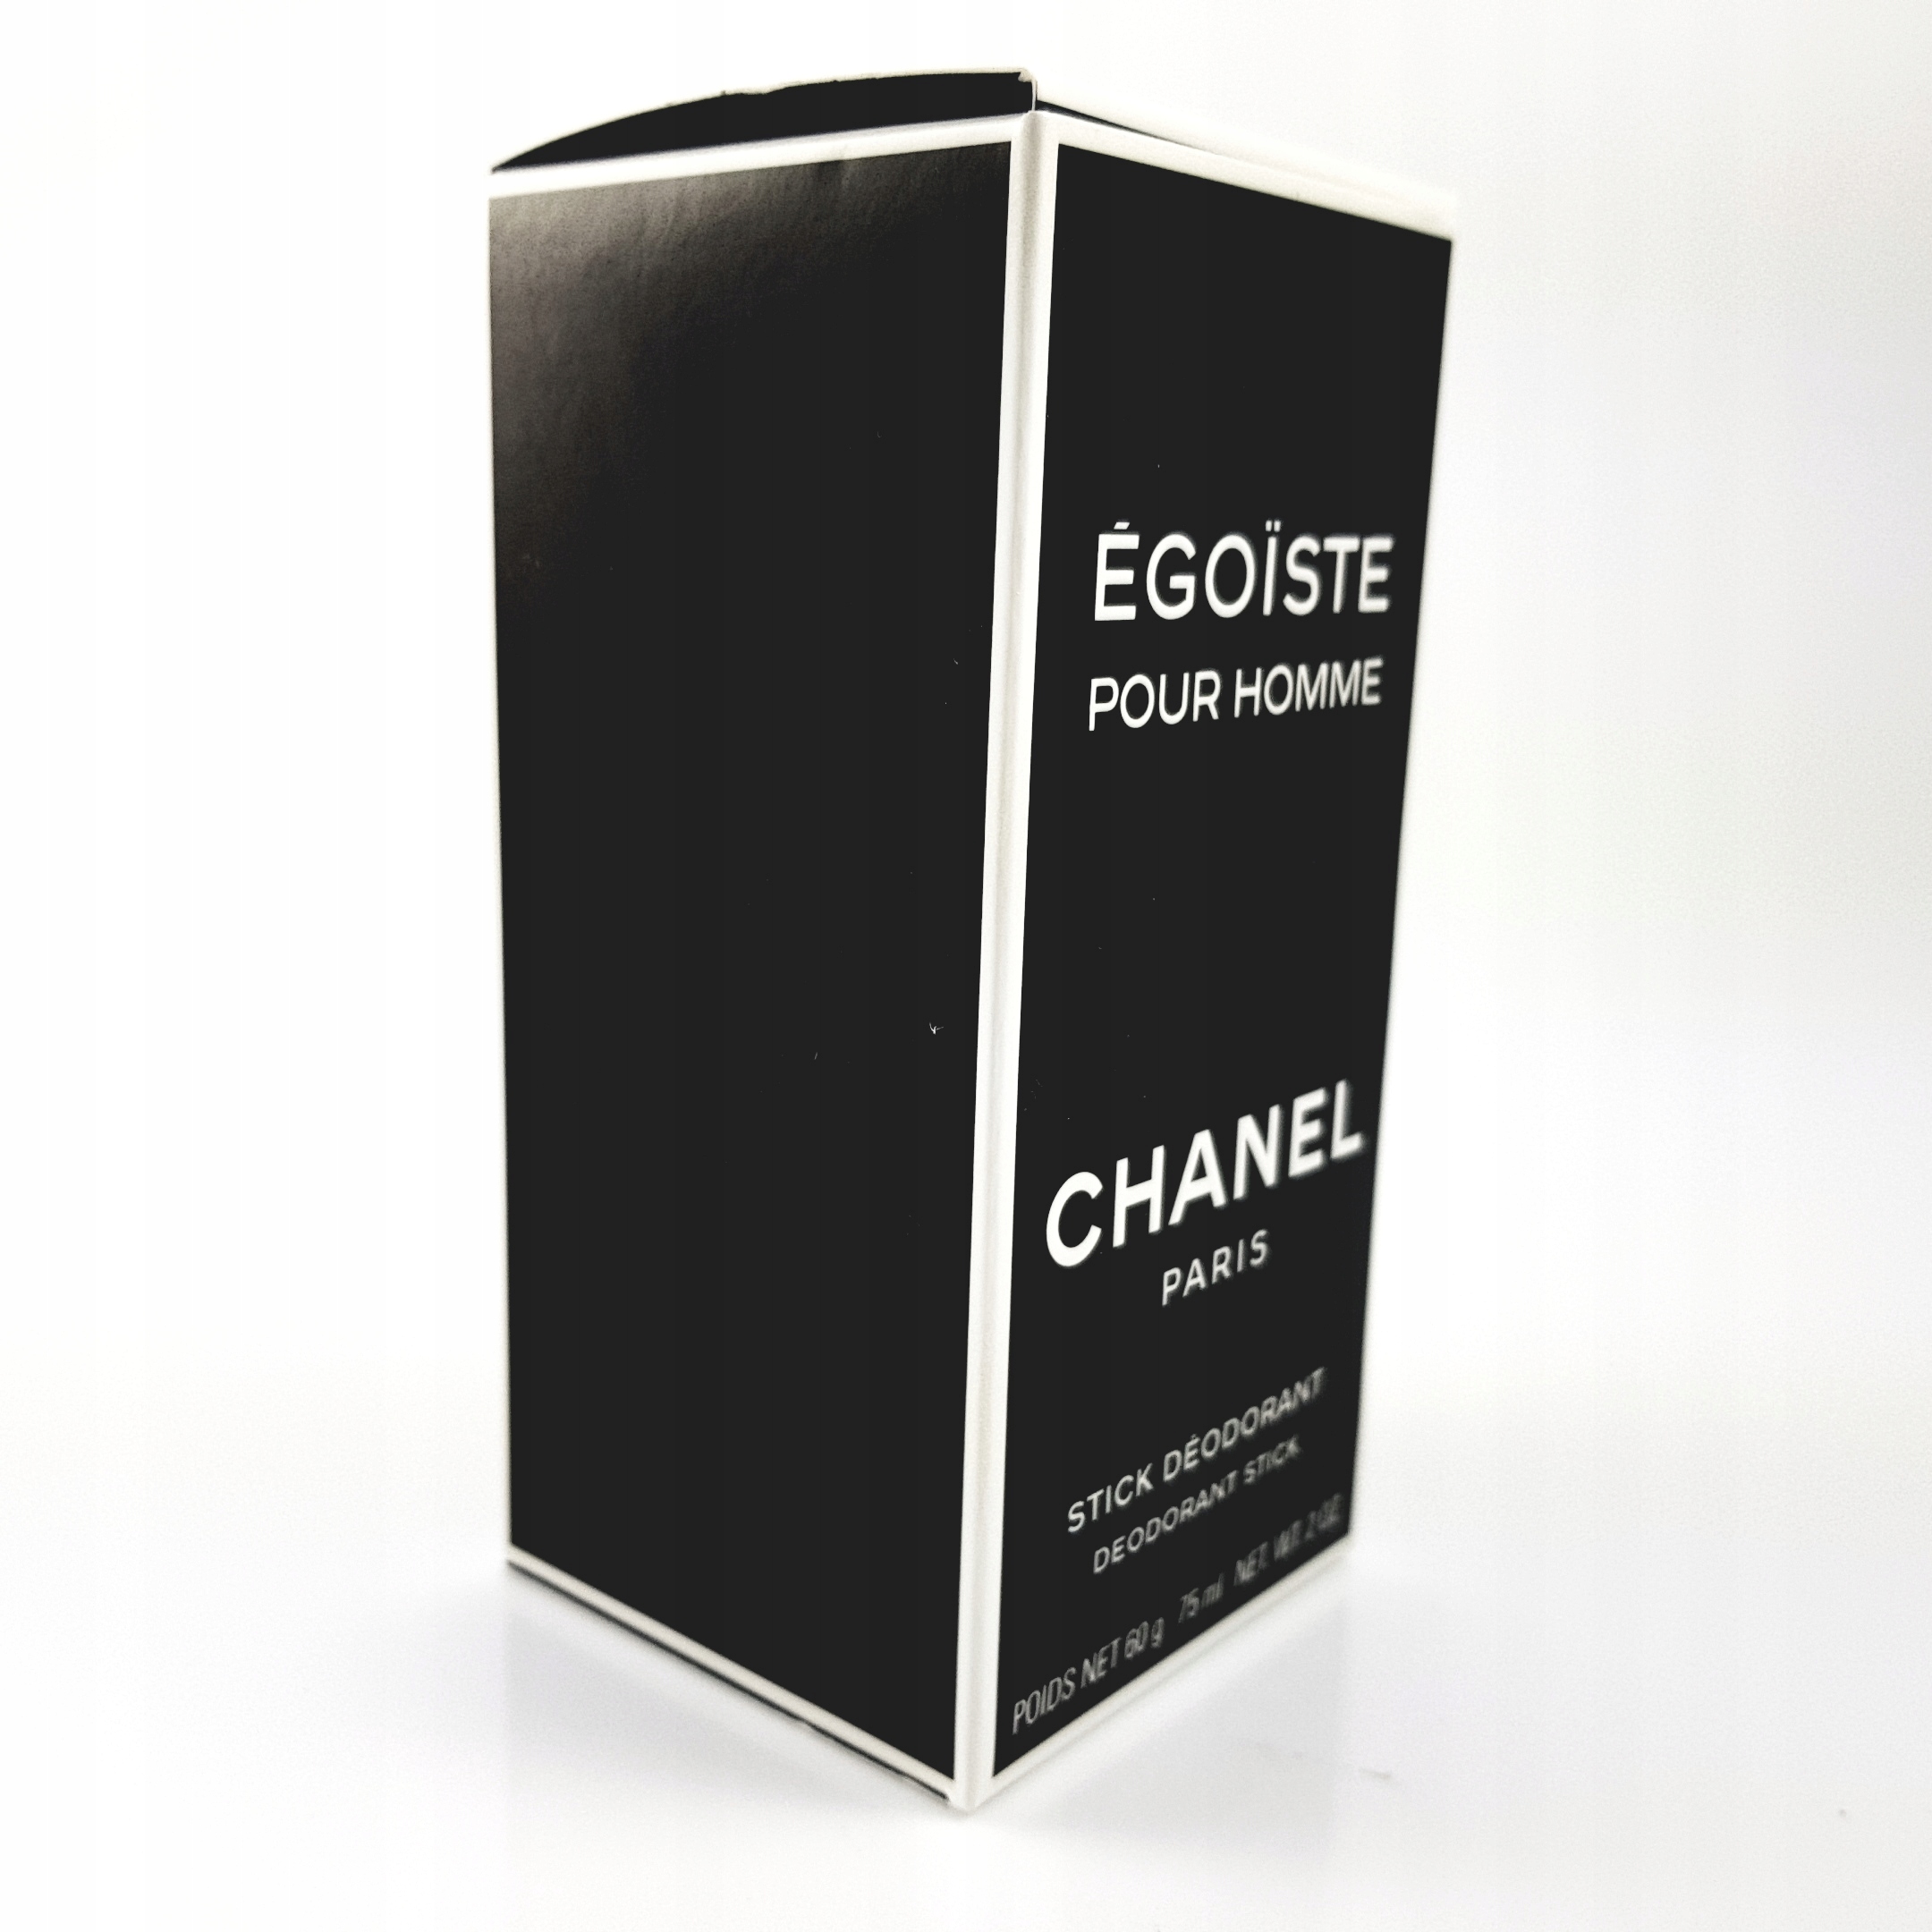 Chanel Platinum Egoiste 3.4 oz Eau De Toilette and 2.oz Deodorant Stick  Gift Set